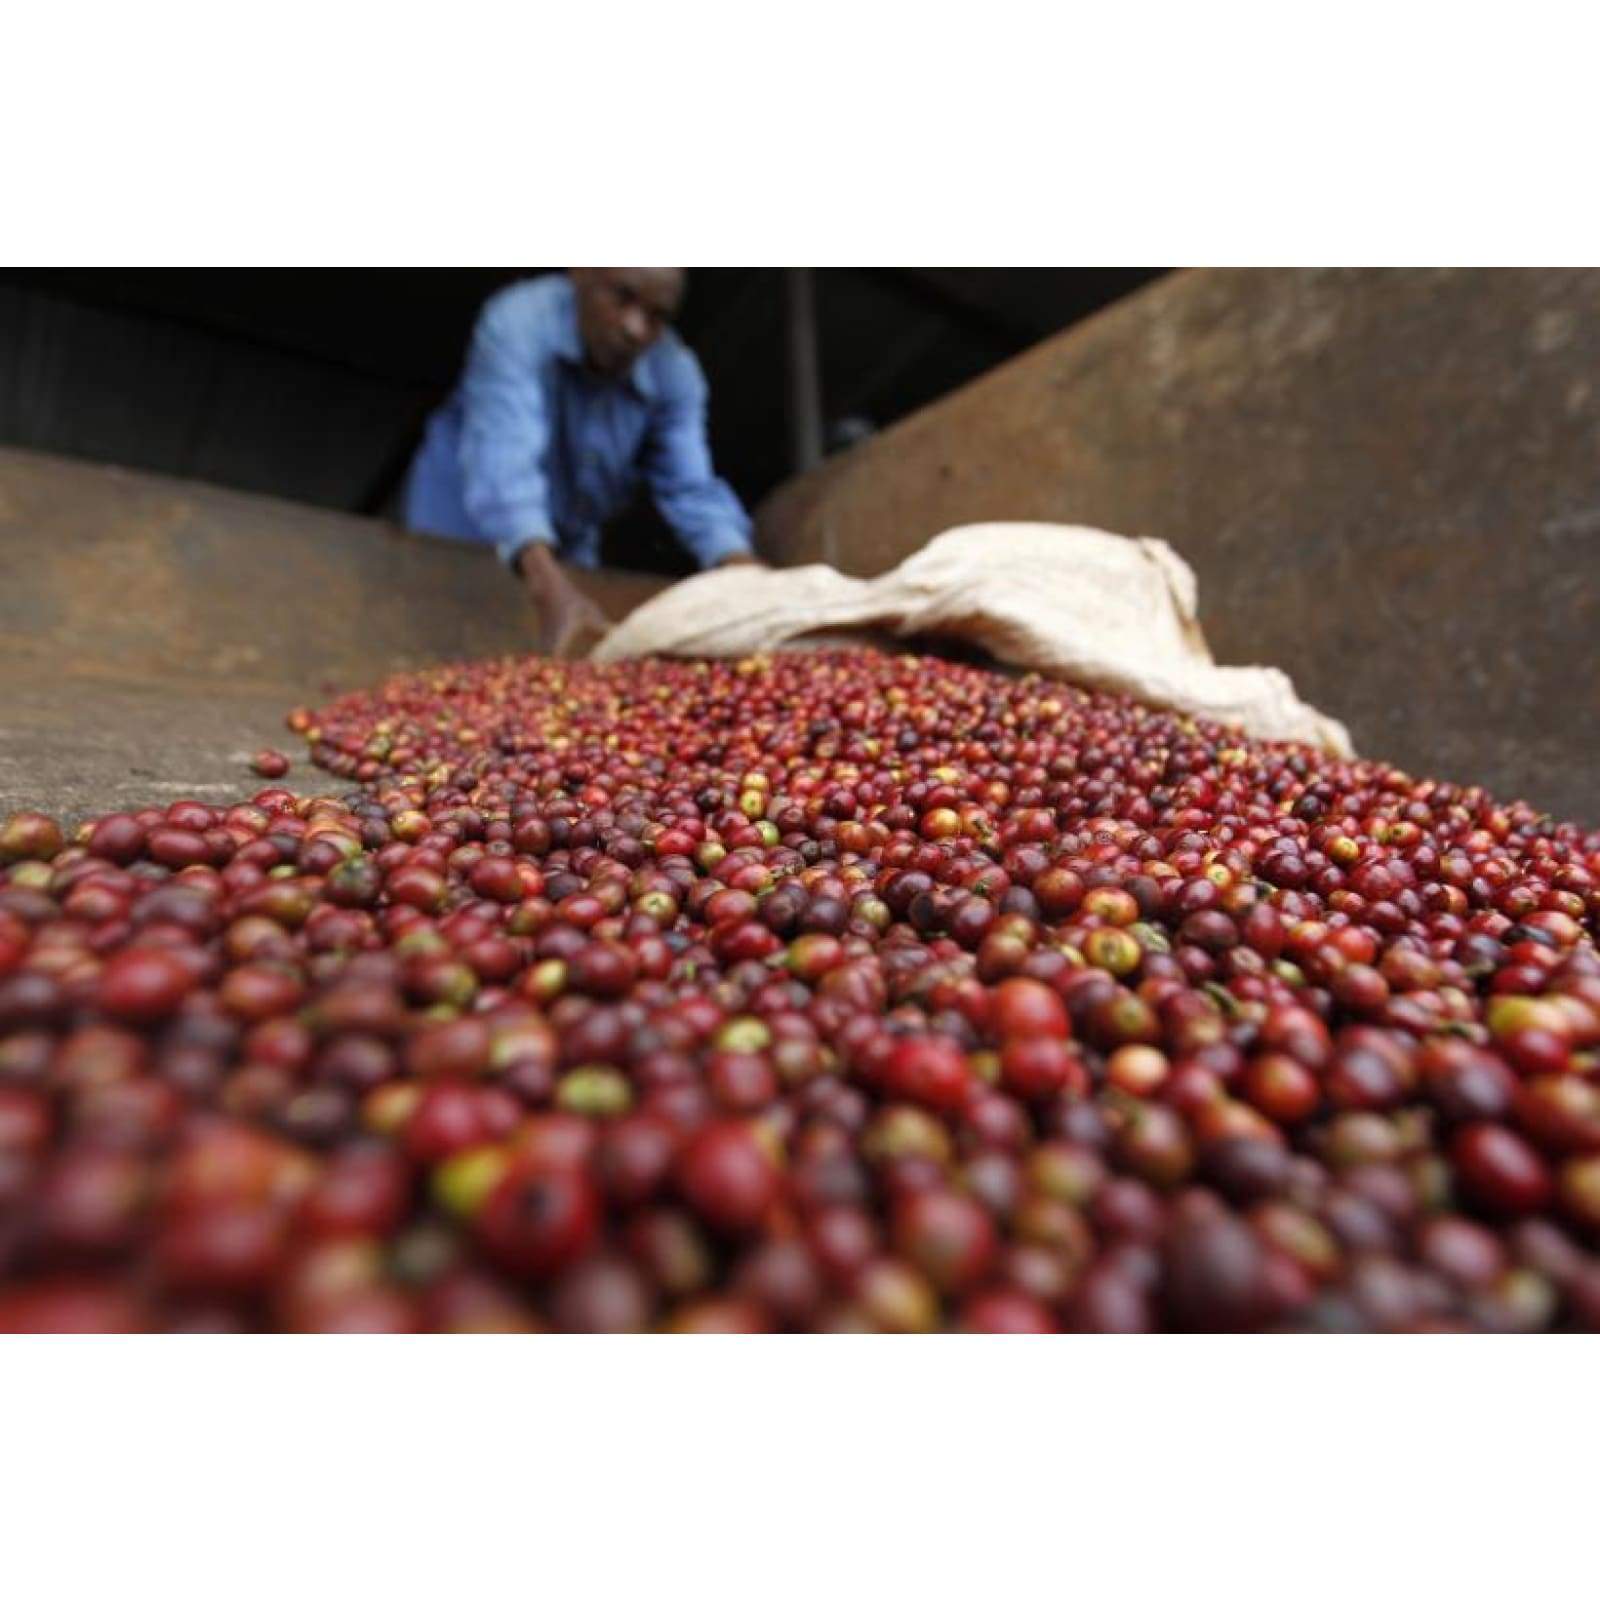 Tanzania Craft Coffee - Single Origin - Coffee - $15.25